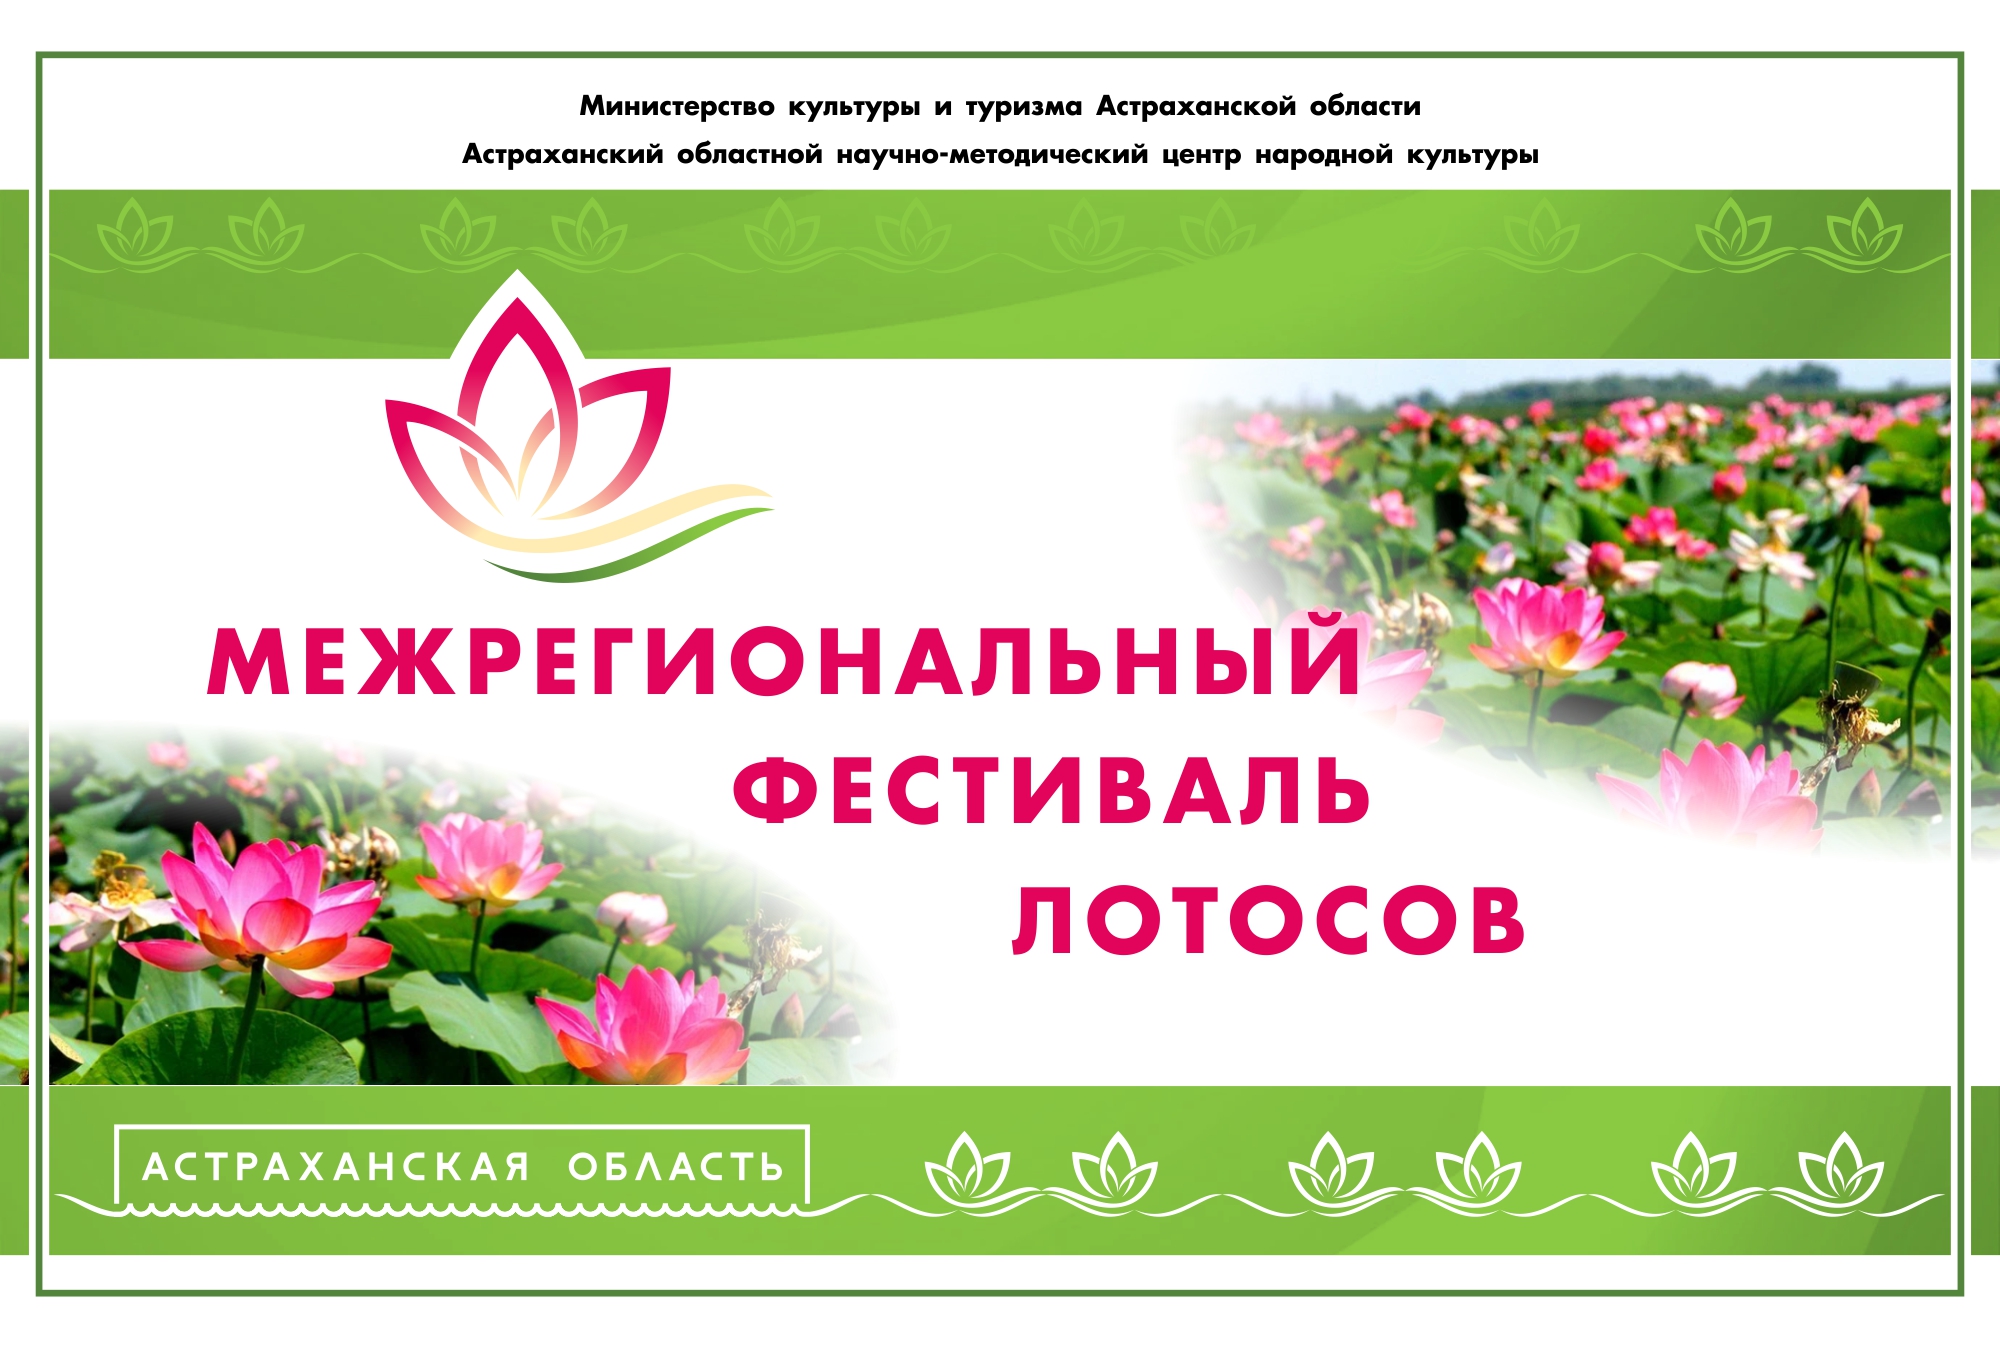 В Астрахани состоится открытие межрегионального фестиваля Лотосов